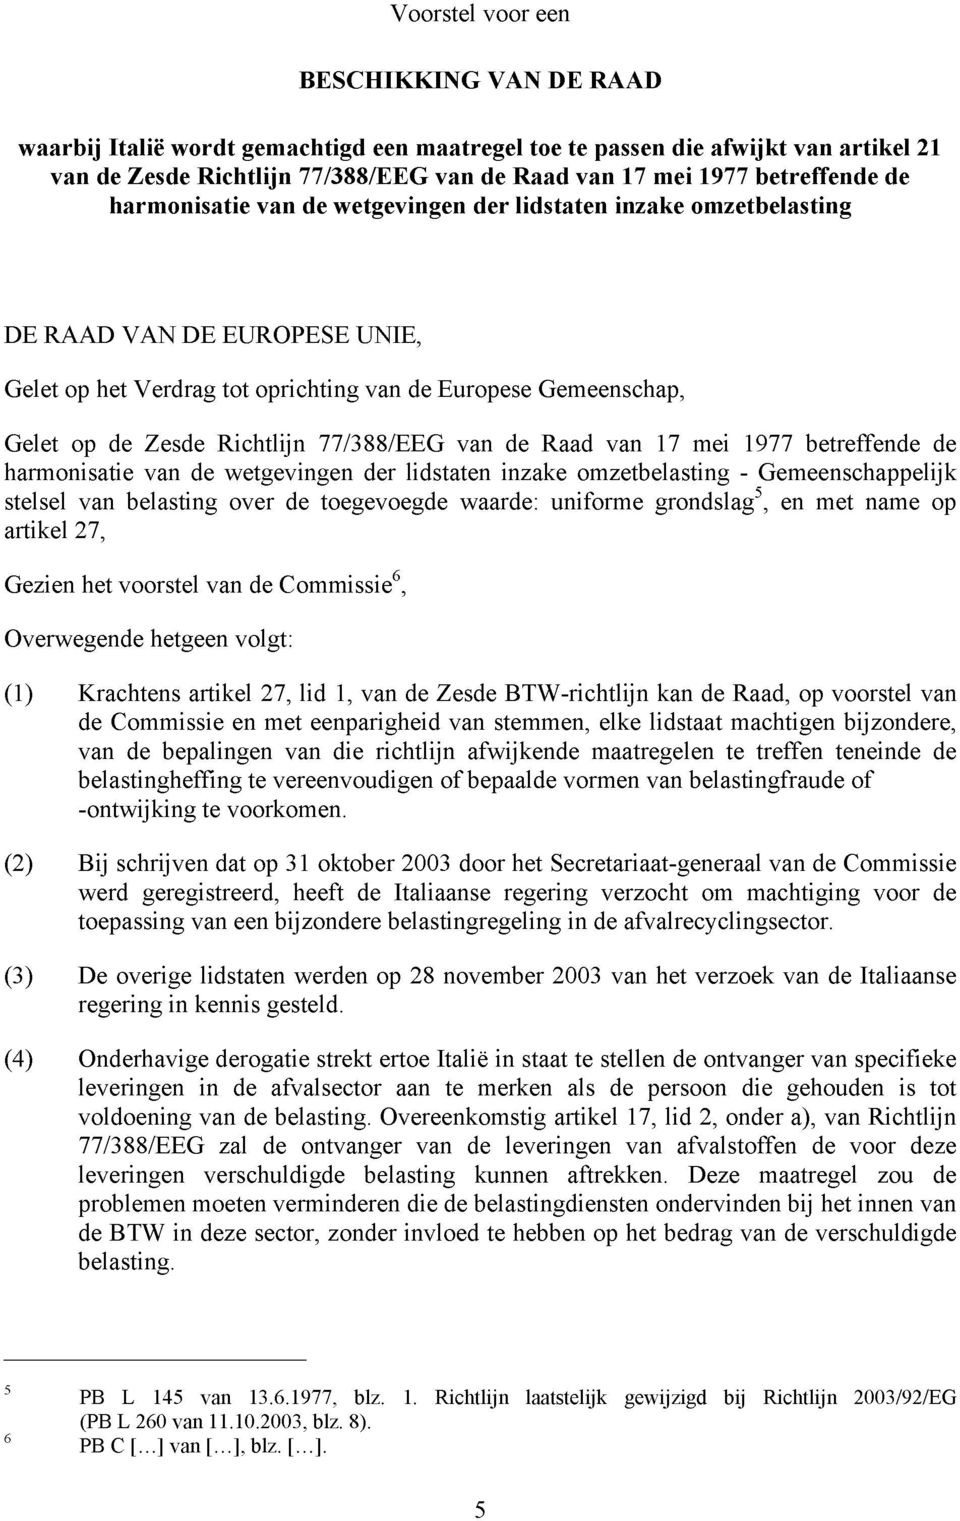 Richtlijn 77/388/EEG van de Raad van 17 mei 1977 betreffende de harmonisatie van de wetgevingen der lidstaten inzake omzetbelasting - Gemeenschappelijk stelsel van belasting over de toegevoegde